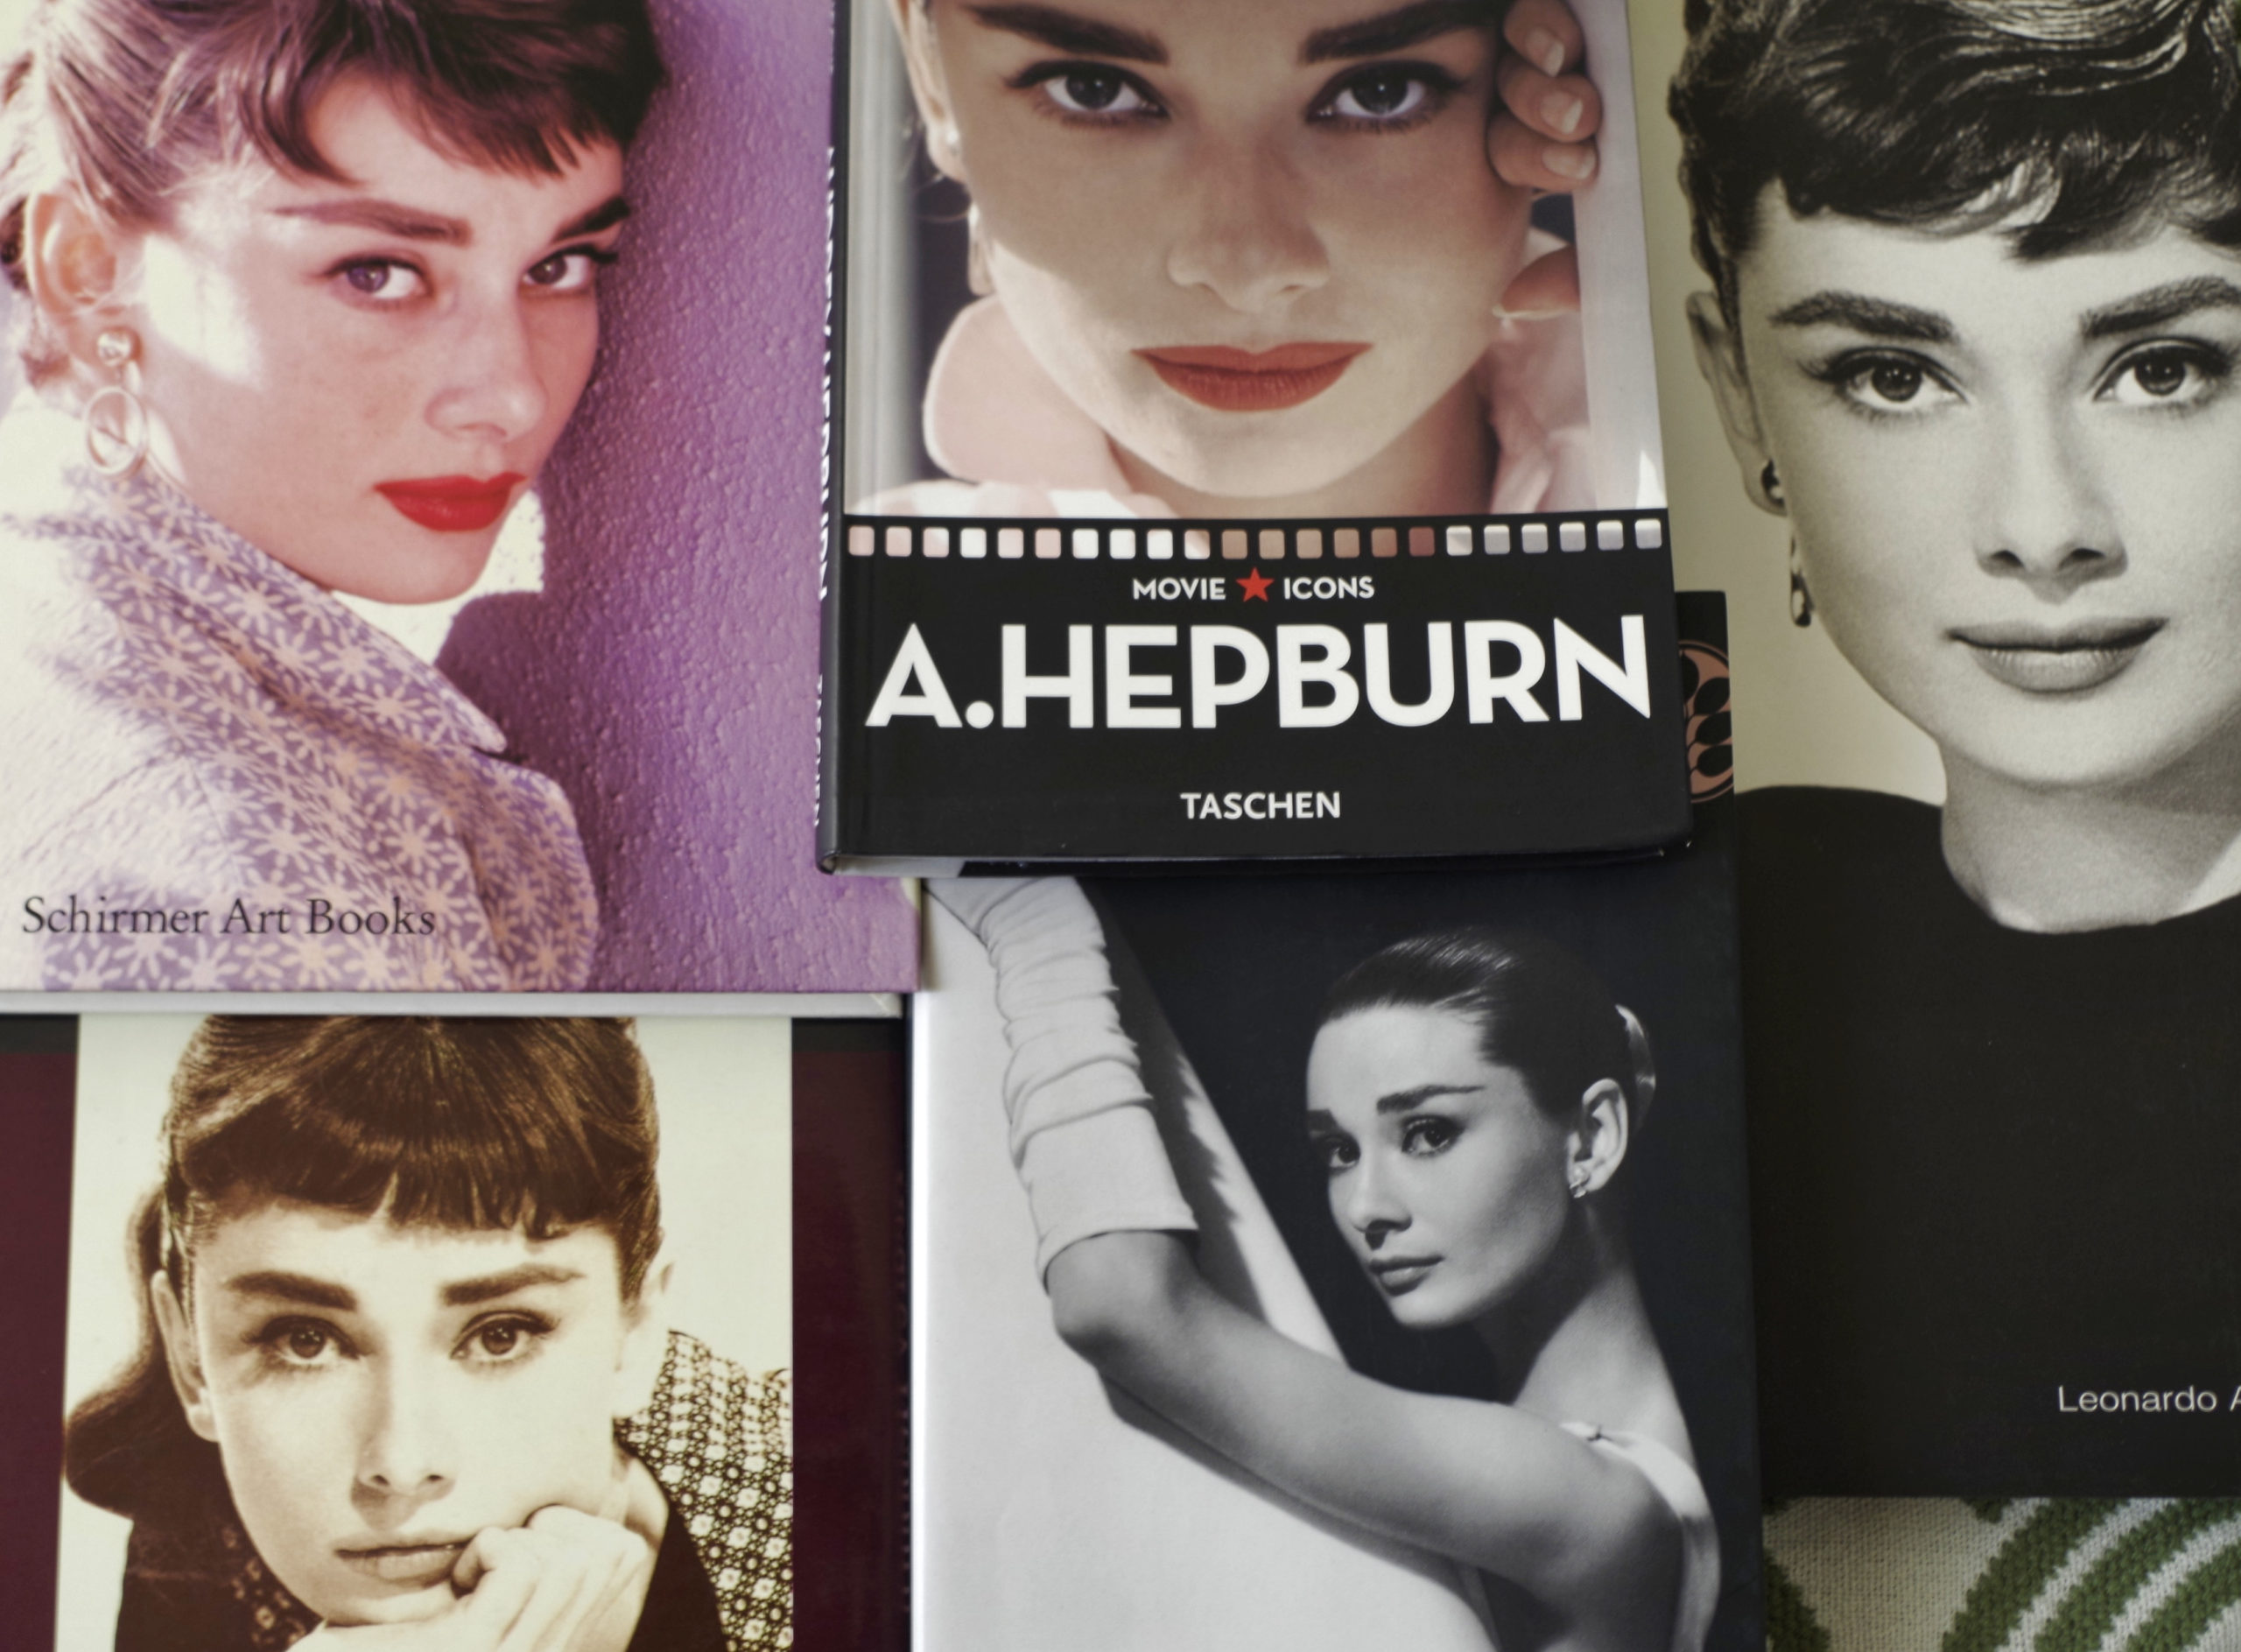 Was Audrey Hepburn Right?